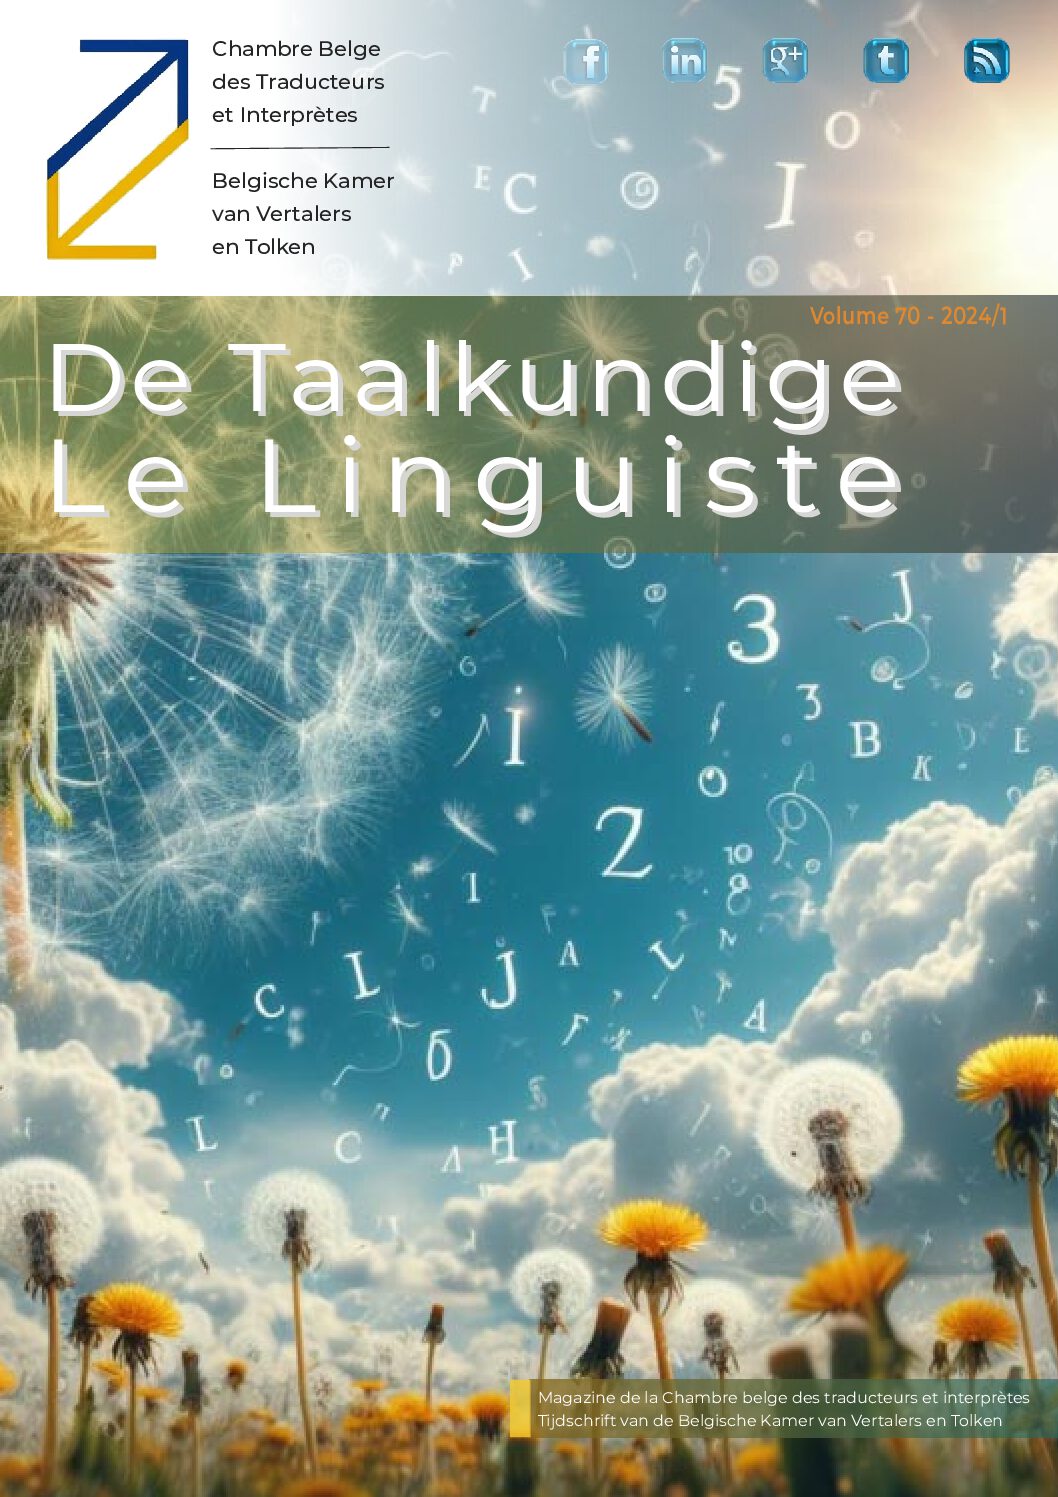 Image de présentation pour le document : De Taalkundige – Le Linguiste 2024-1